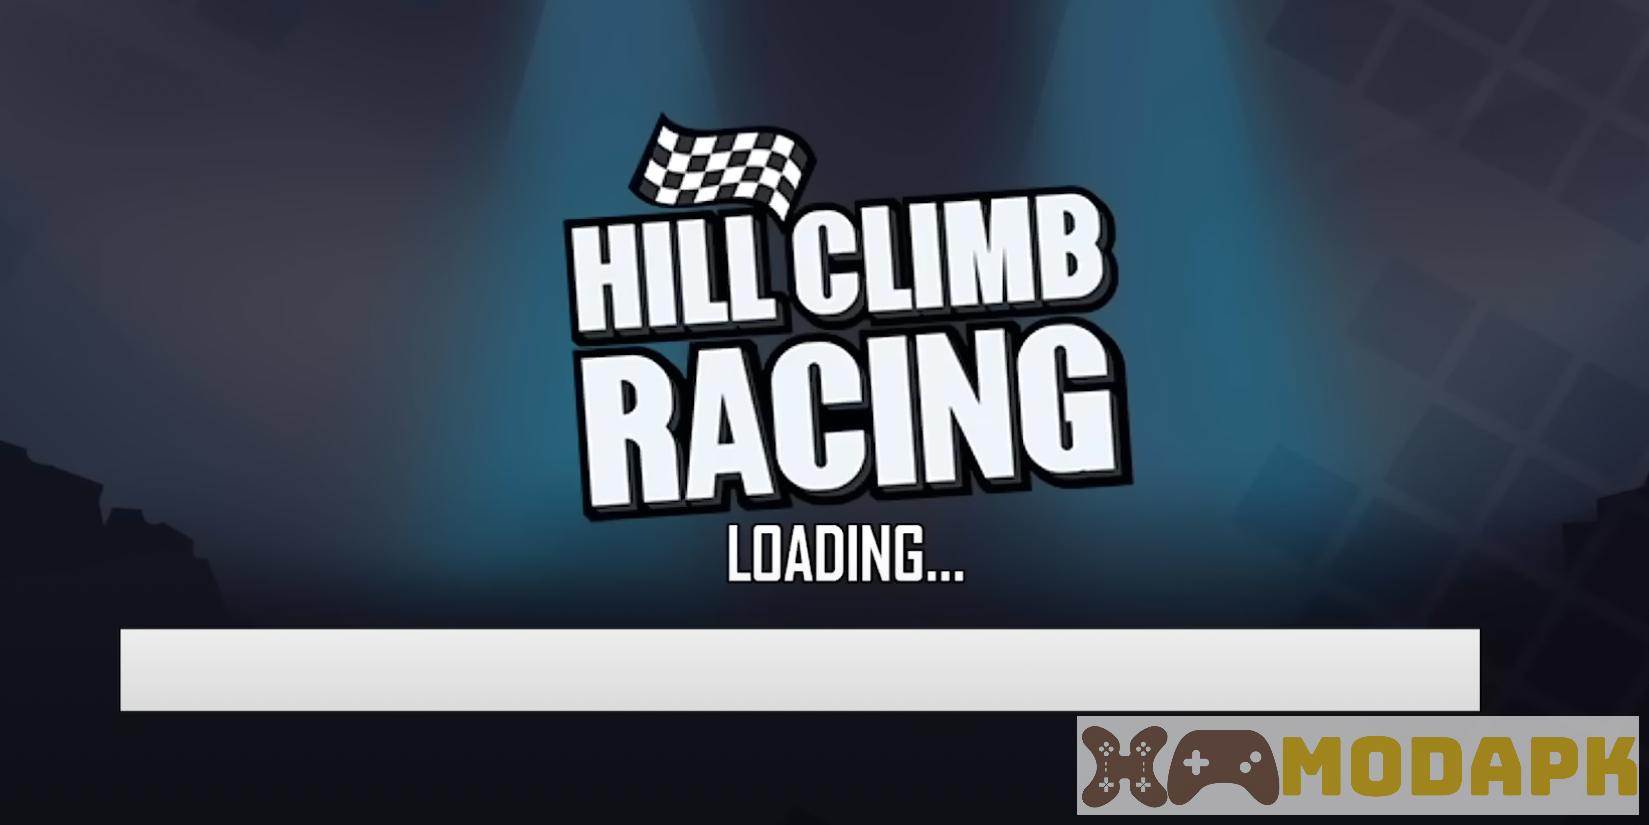 Hack Hill Climb Racing MOD (Menu Pro, Tiền, Vàng Full, Kim Cương, Nhiên Liệu) APK 1.62.1